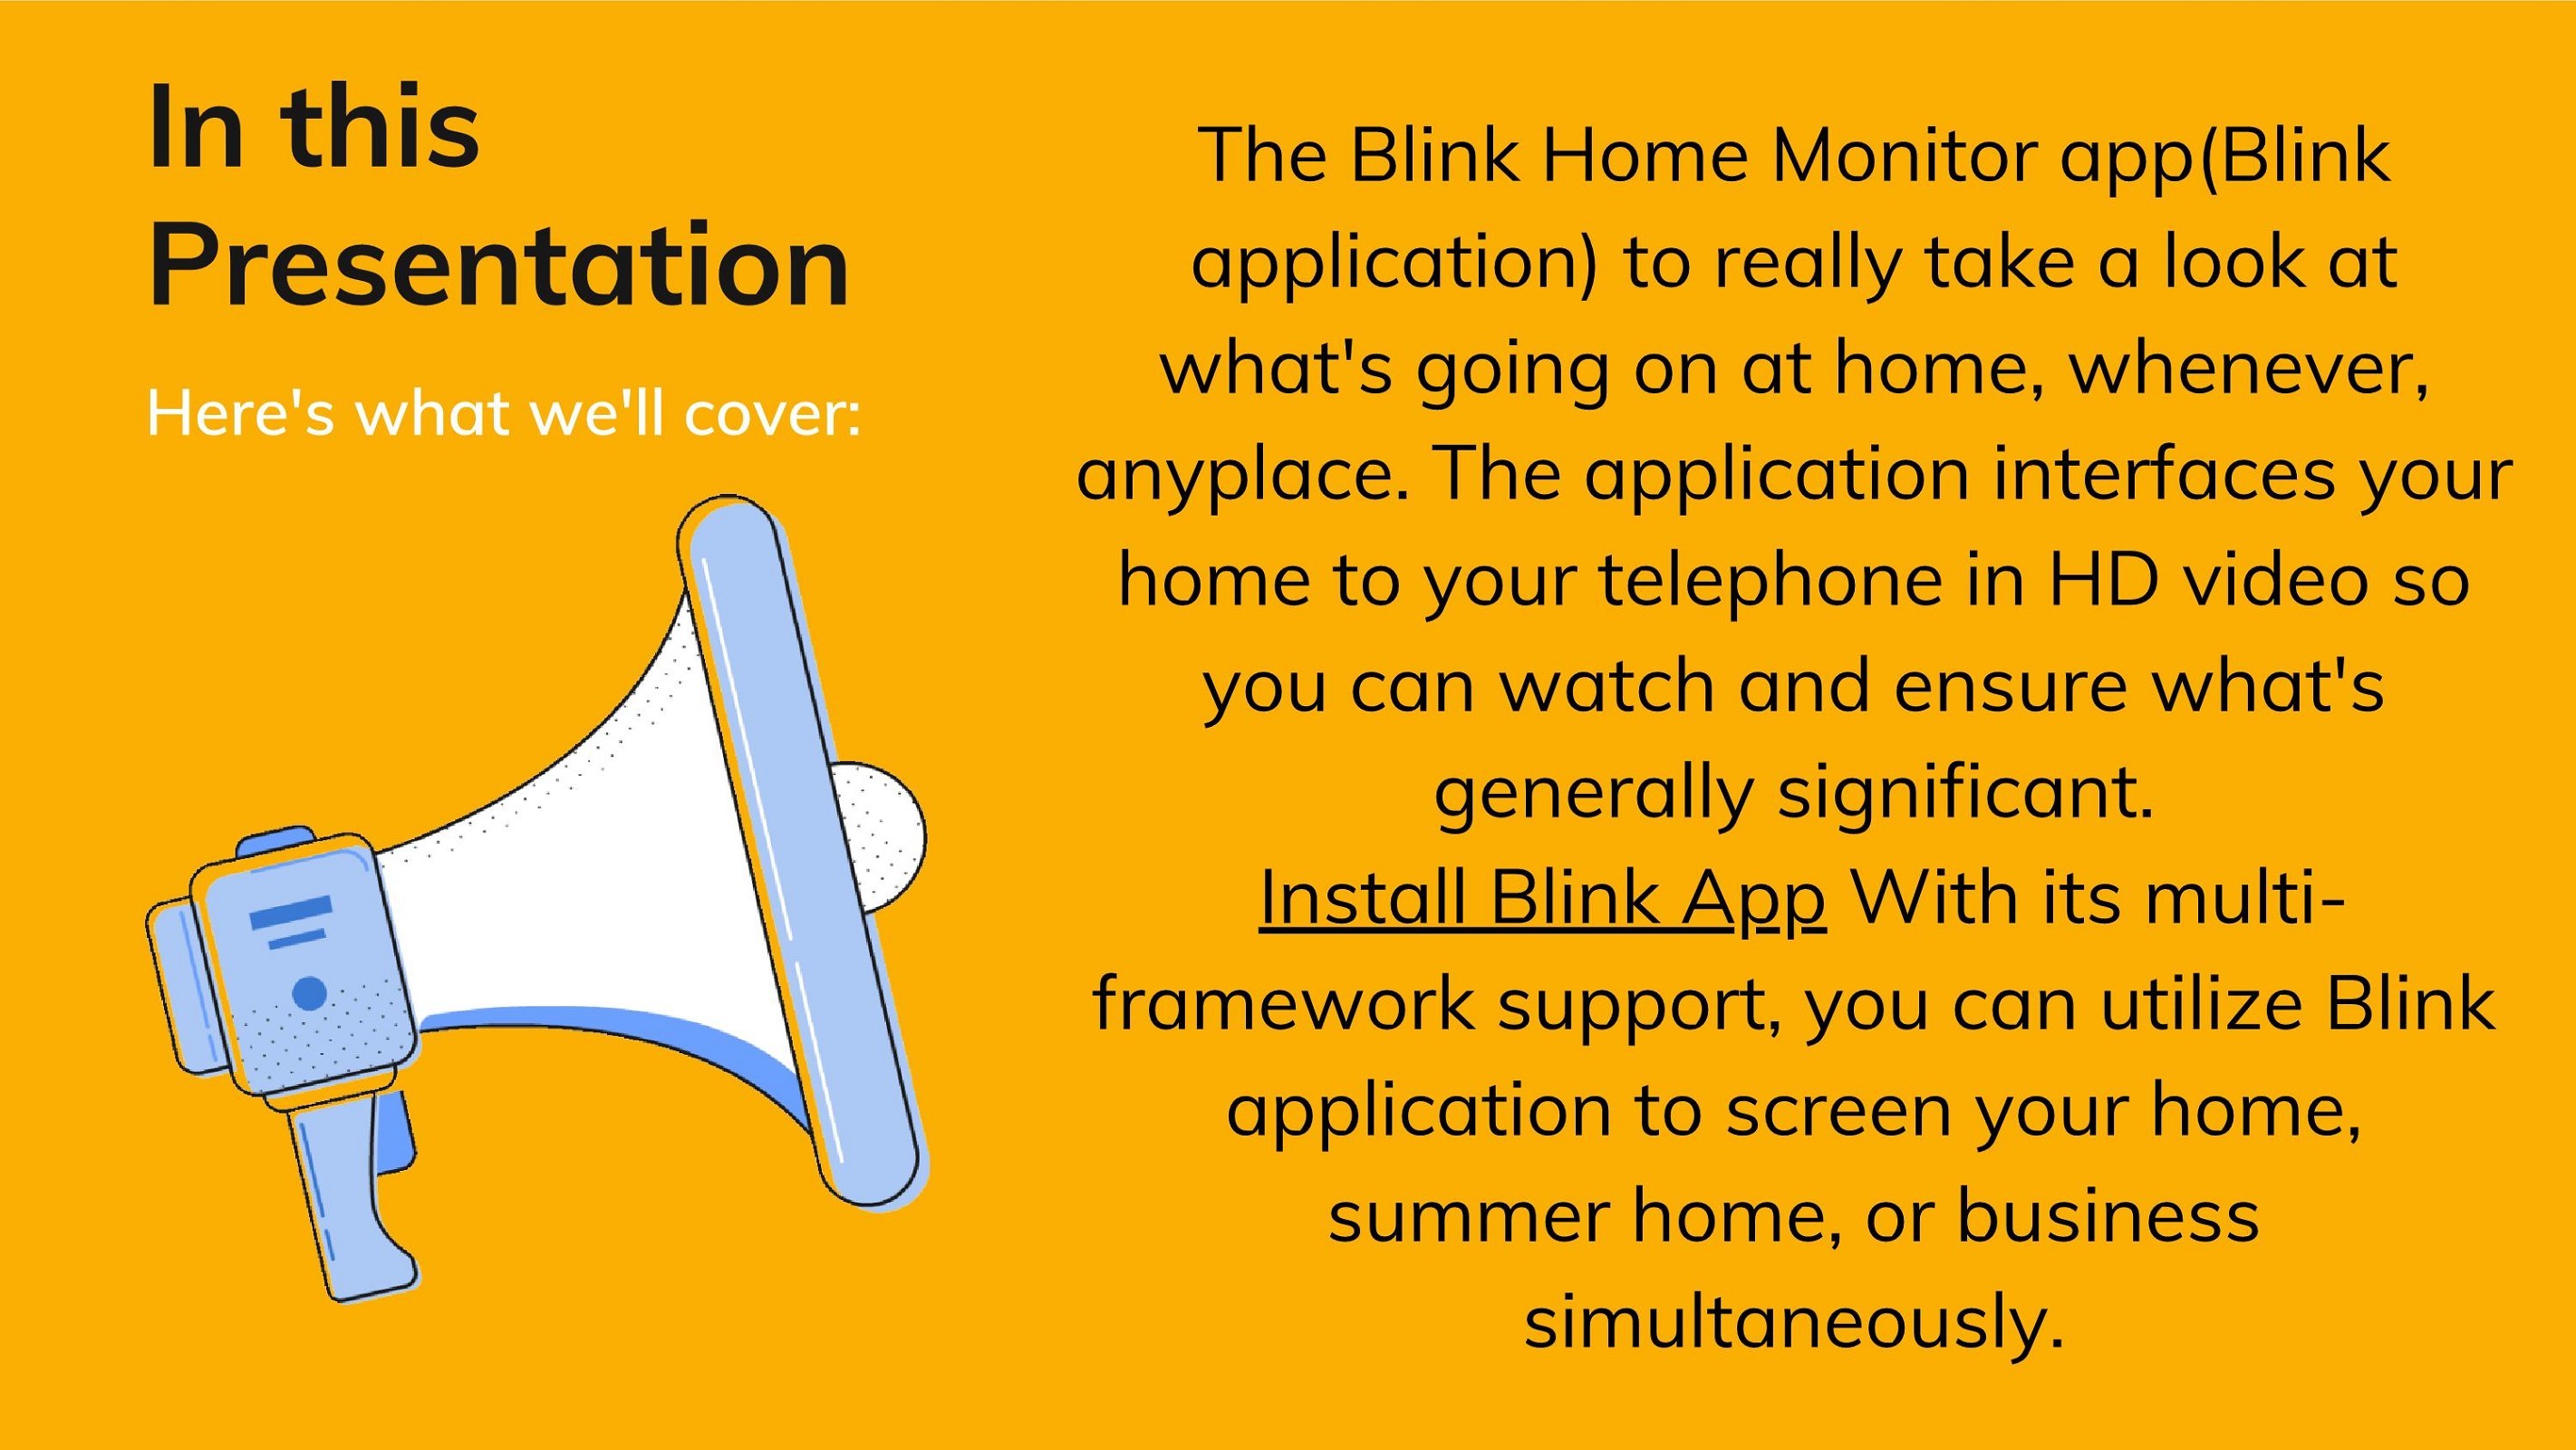 Install Blink App